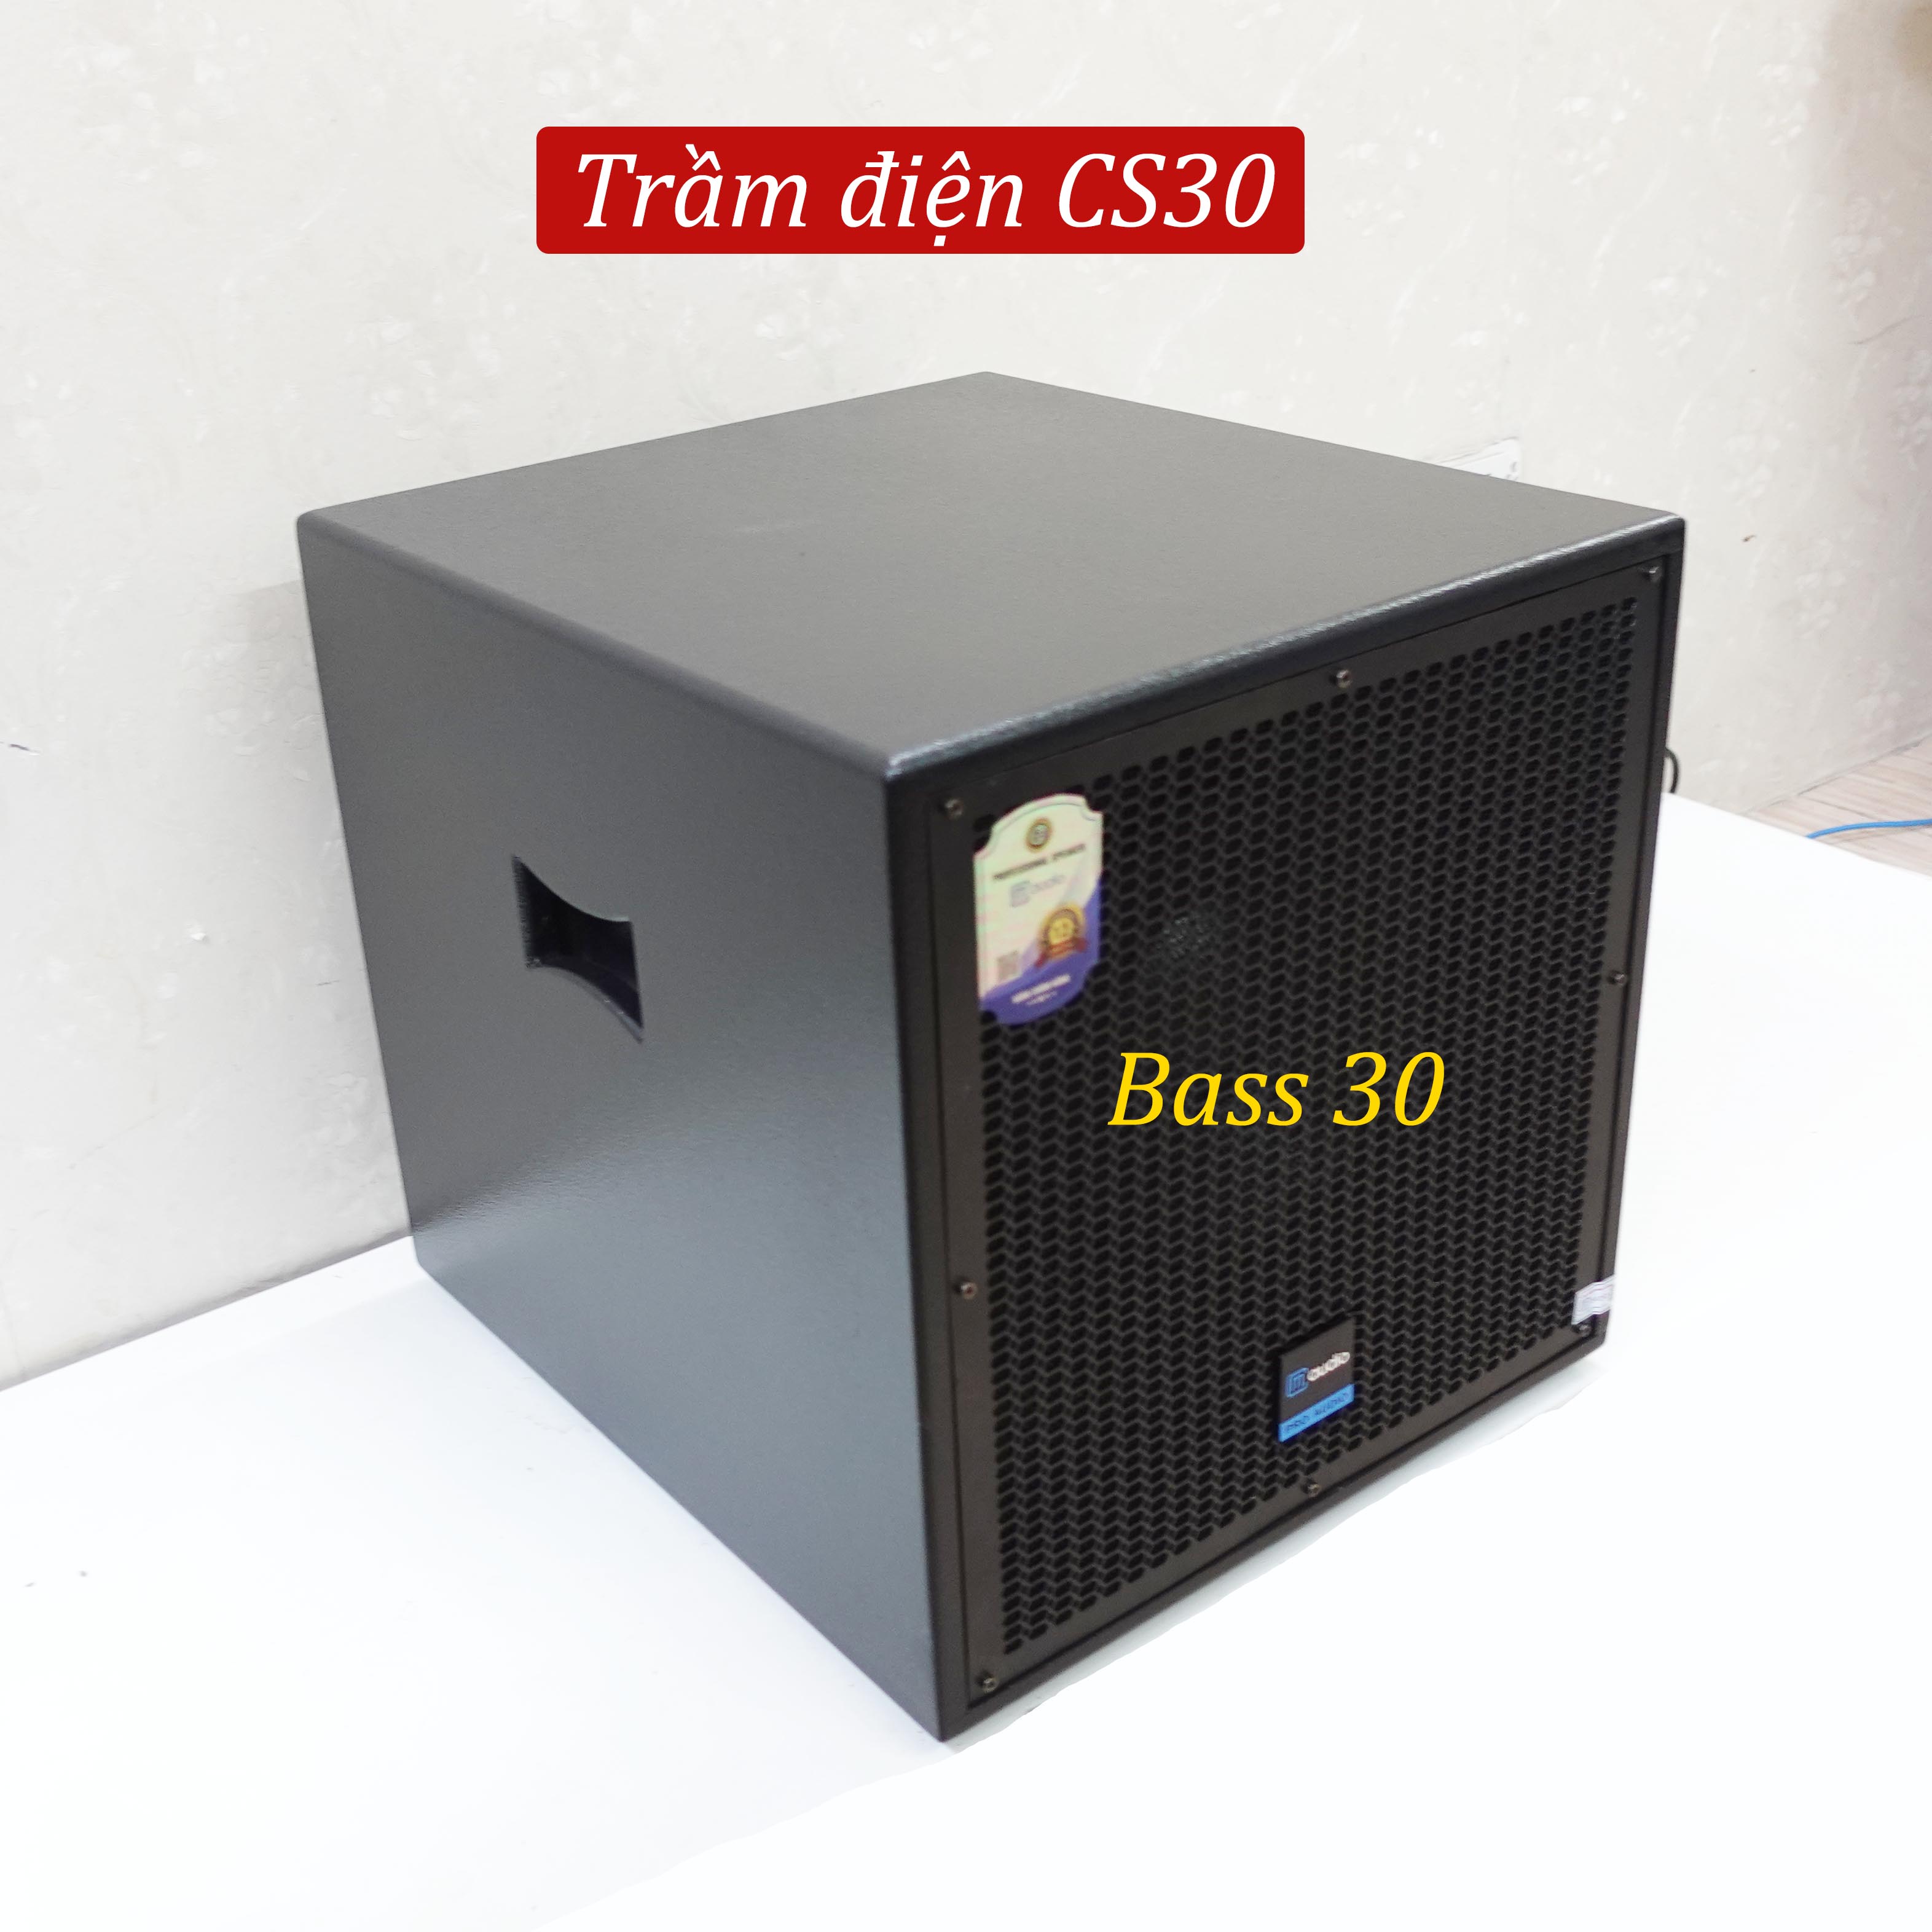 Loa Trầm Điện CM CS30 Bass 30 công suất 450w